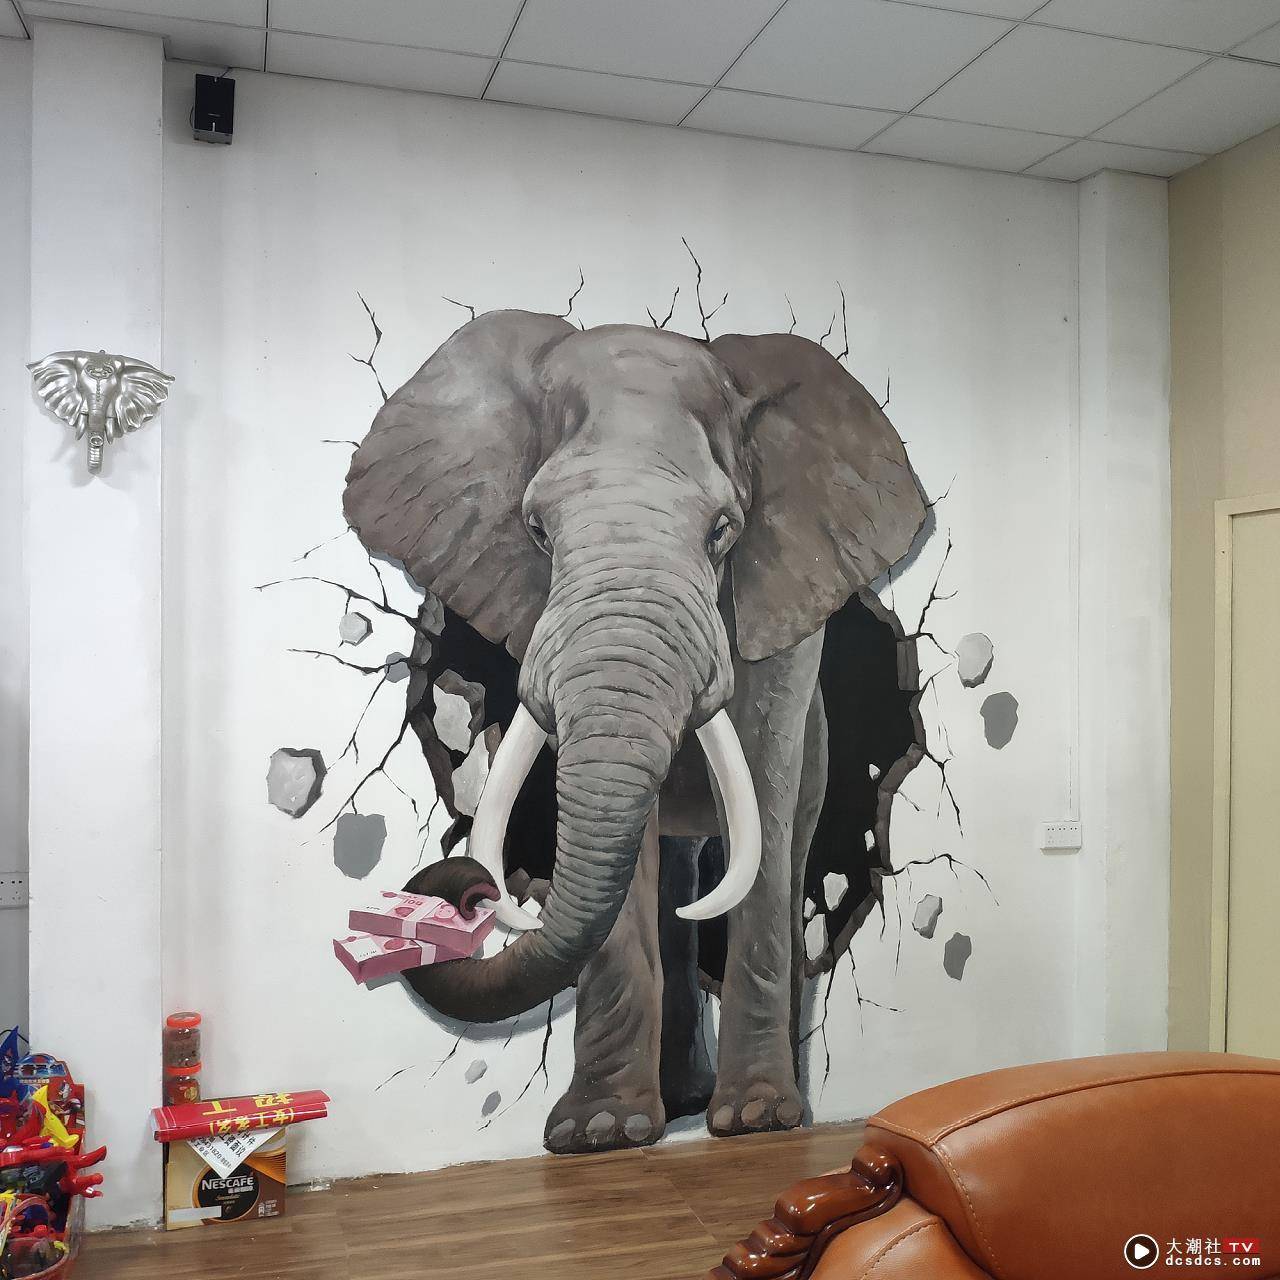 汕头3D大象墙绘 / 室内装修壁画墙绘 / 公司工作室墙绘